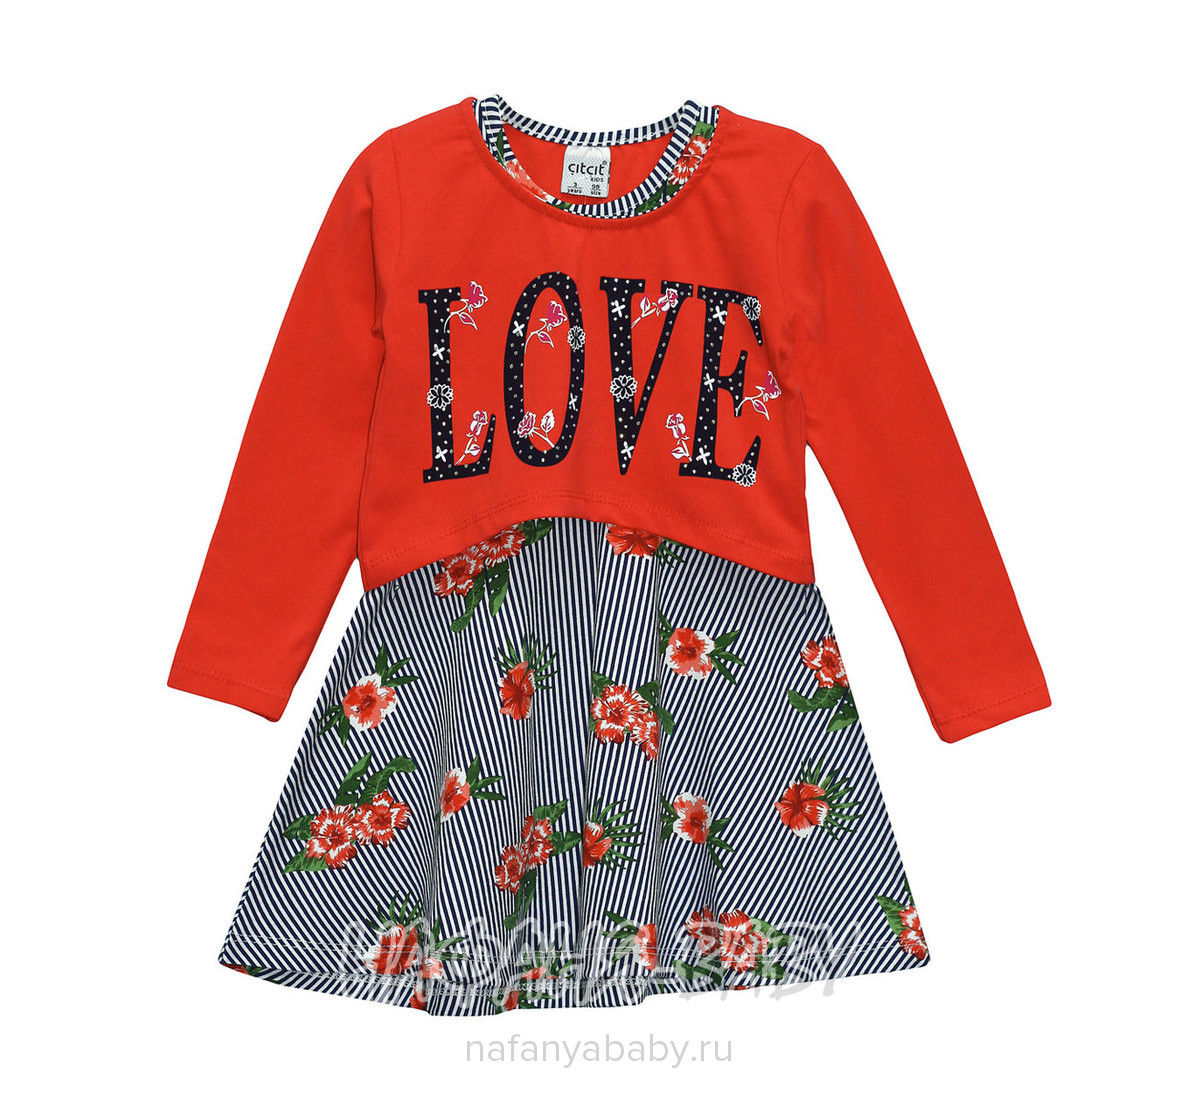 Детское трикотажное платье + болеро Cit Cit, купить в интернет магазине Нафаня. арт: 7223.